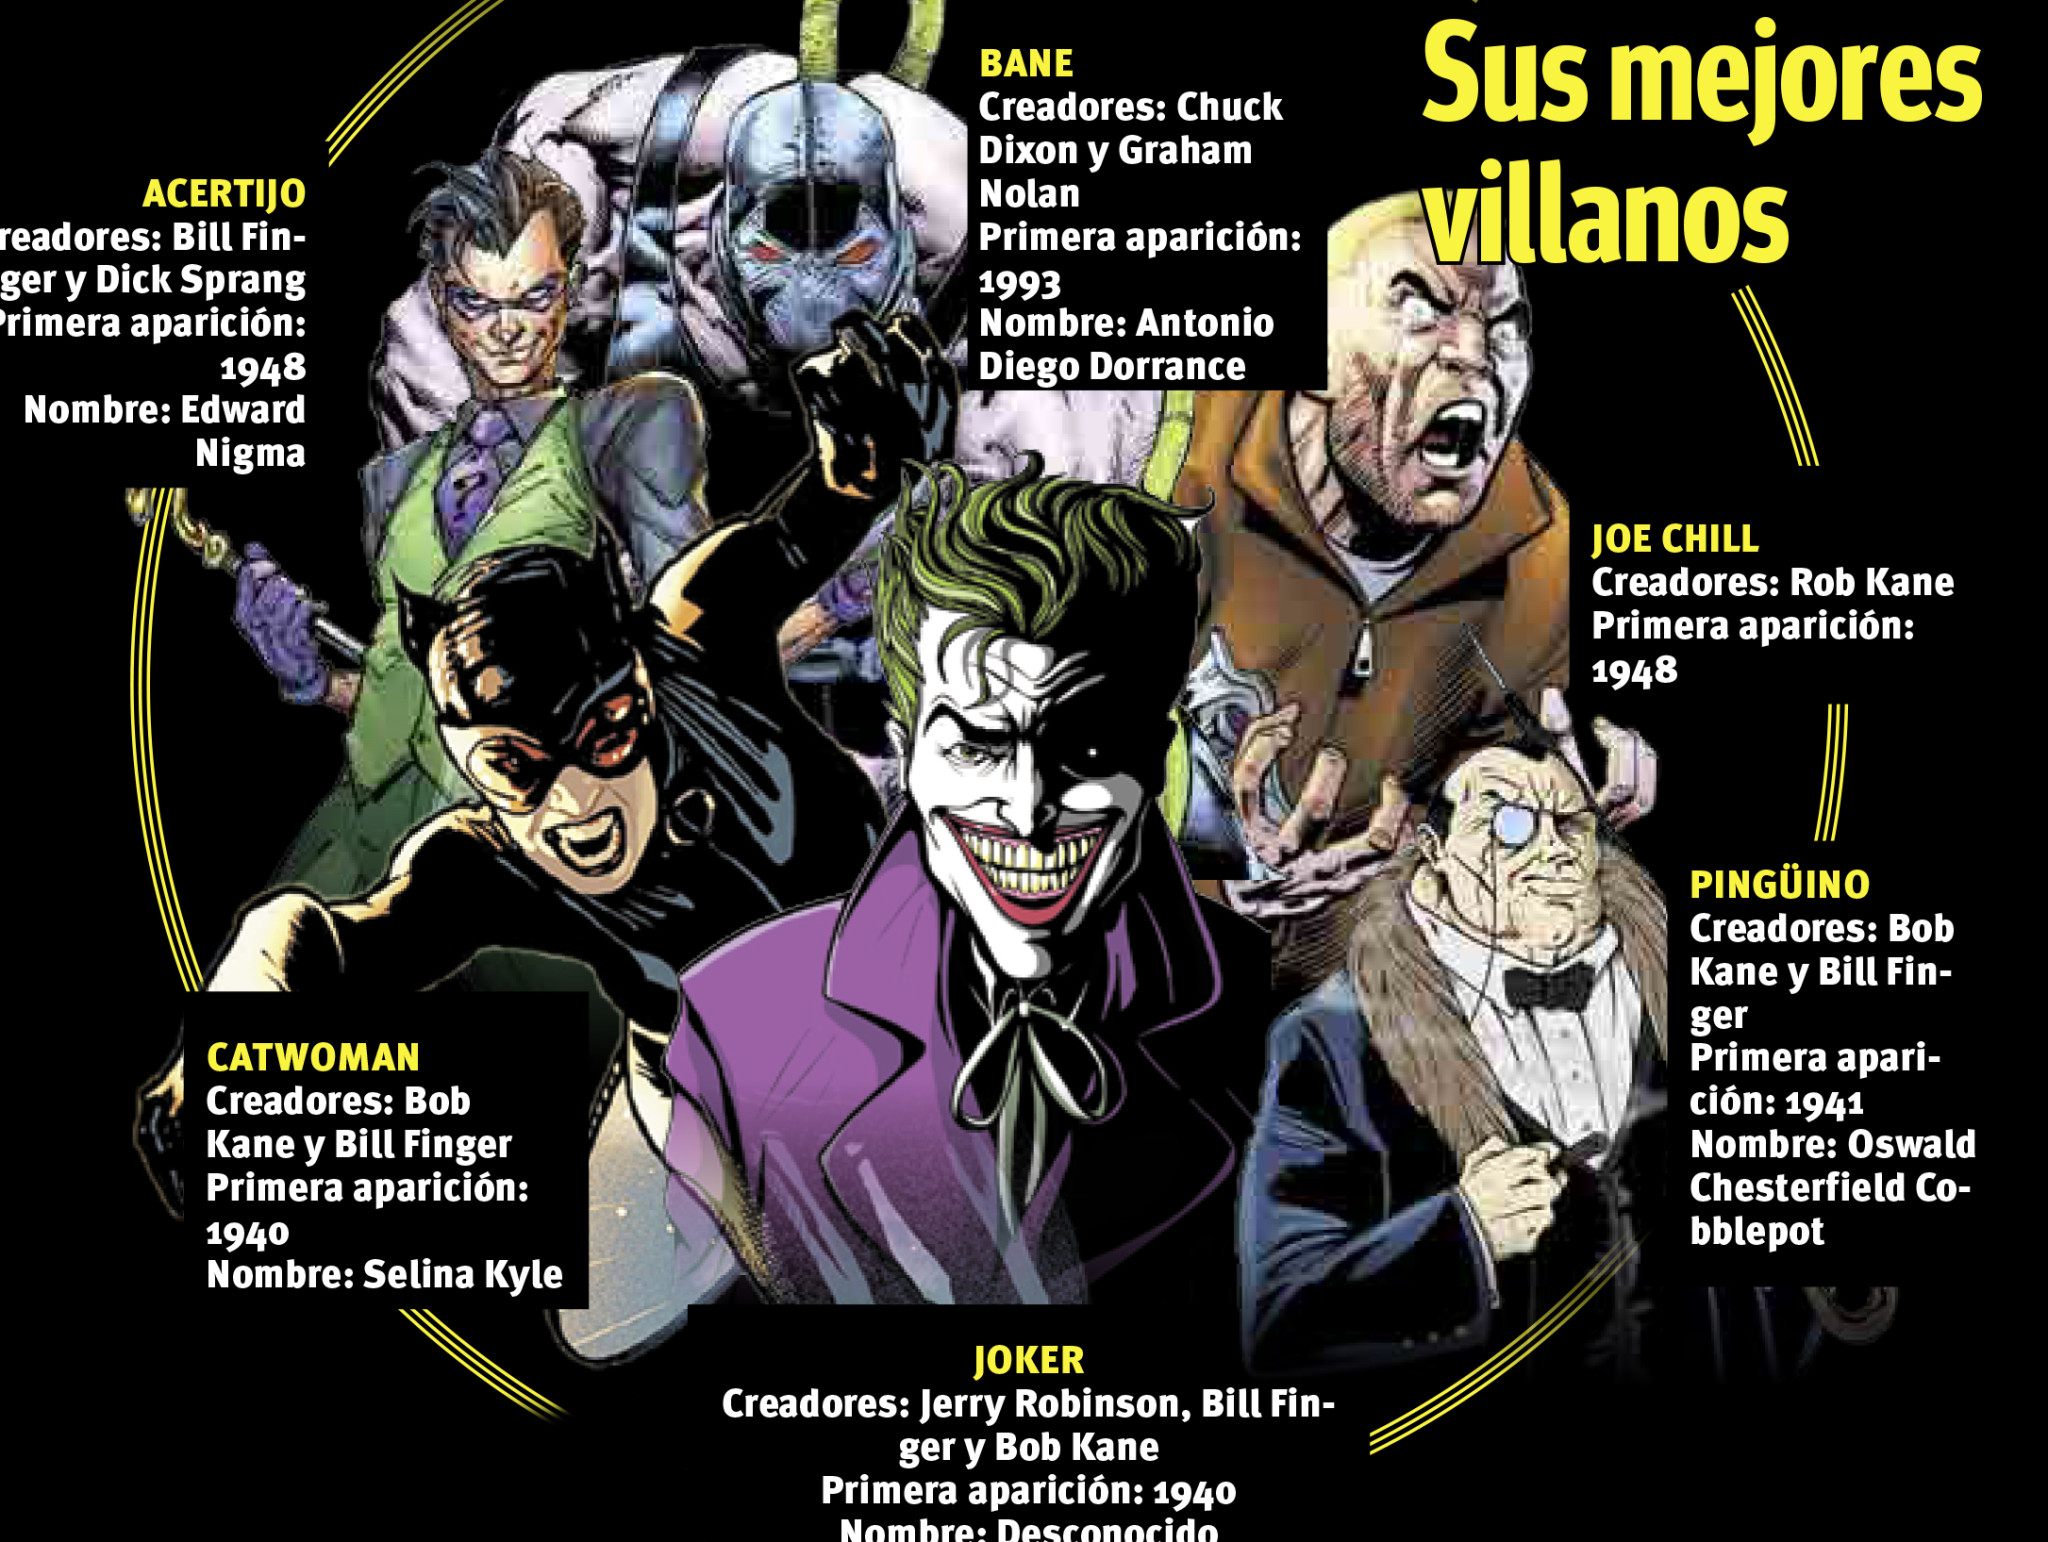 $!80 años de Batman: La oscuridad hecha justicia